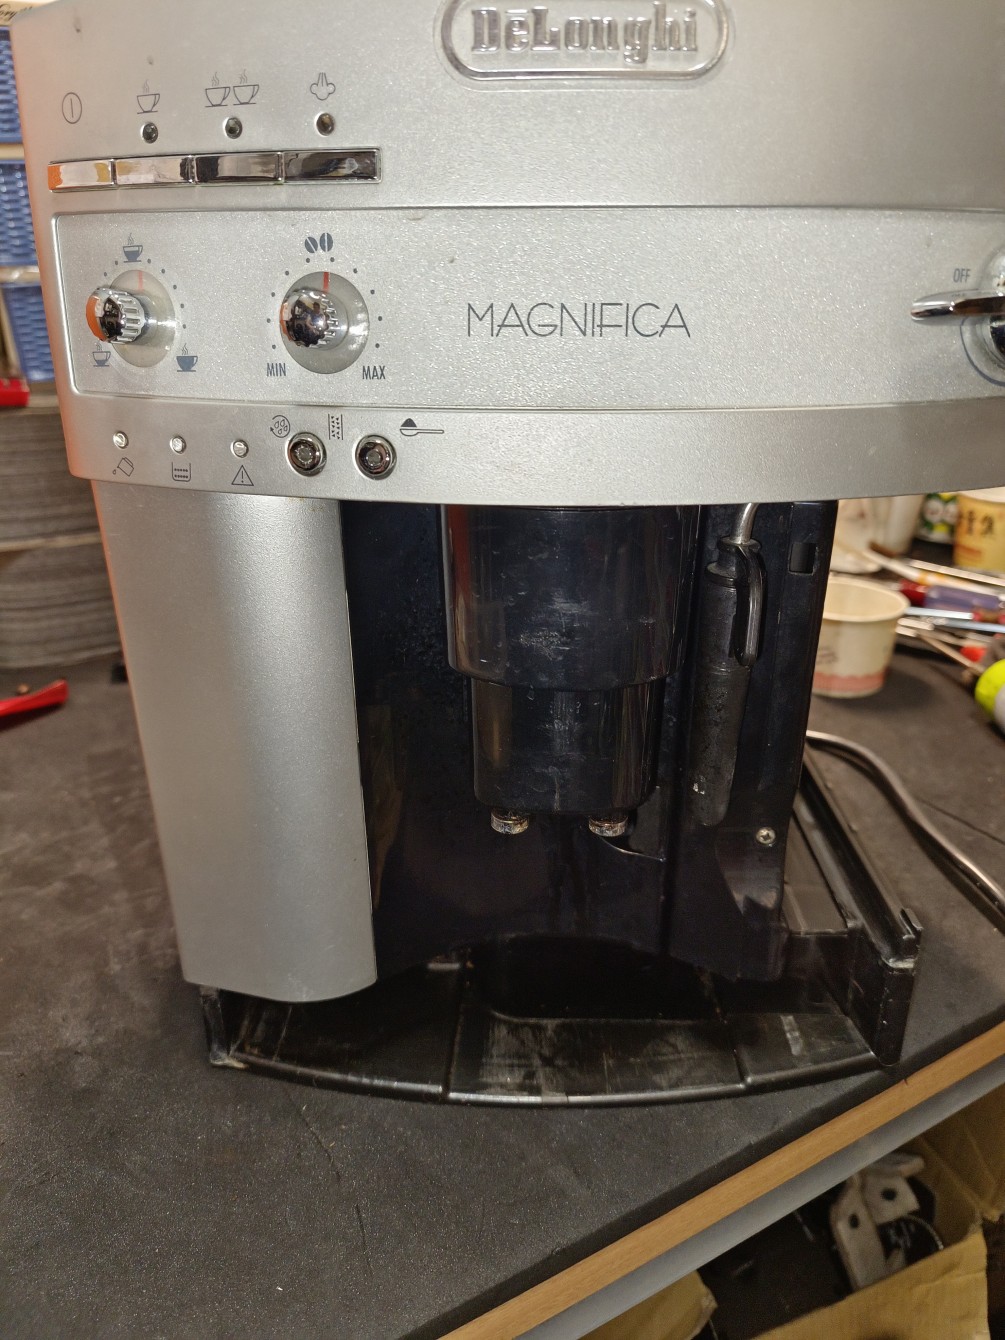 迪郎奇-3200全自動咖啡機-無法開機定位-沖泡組卡住-零件維修更新處理